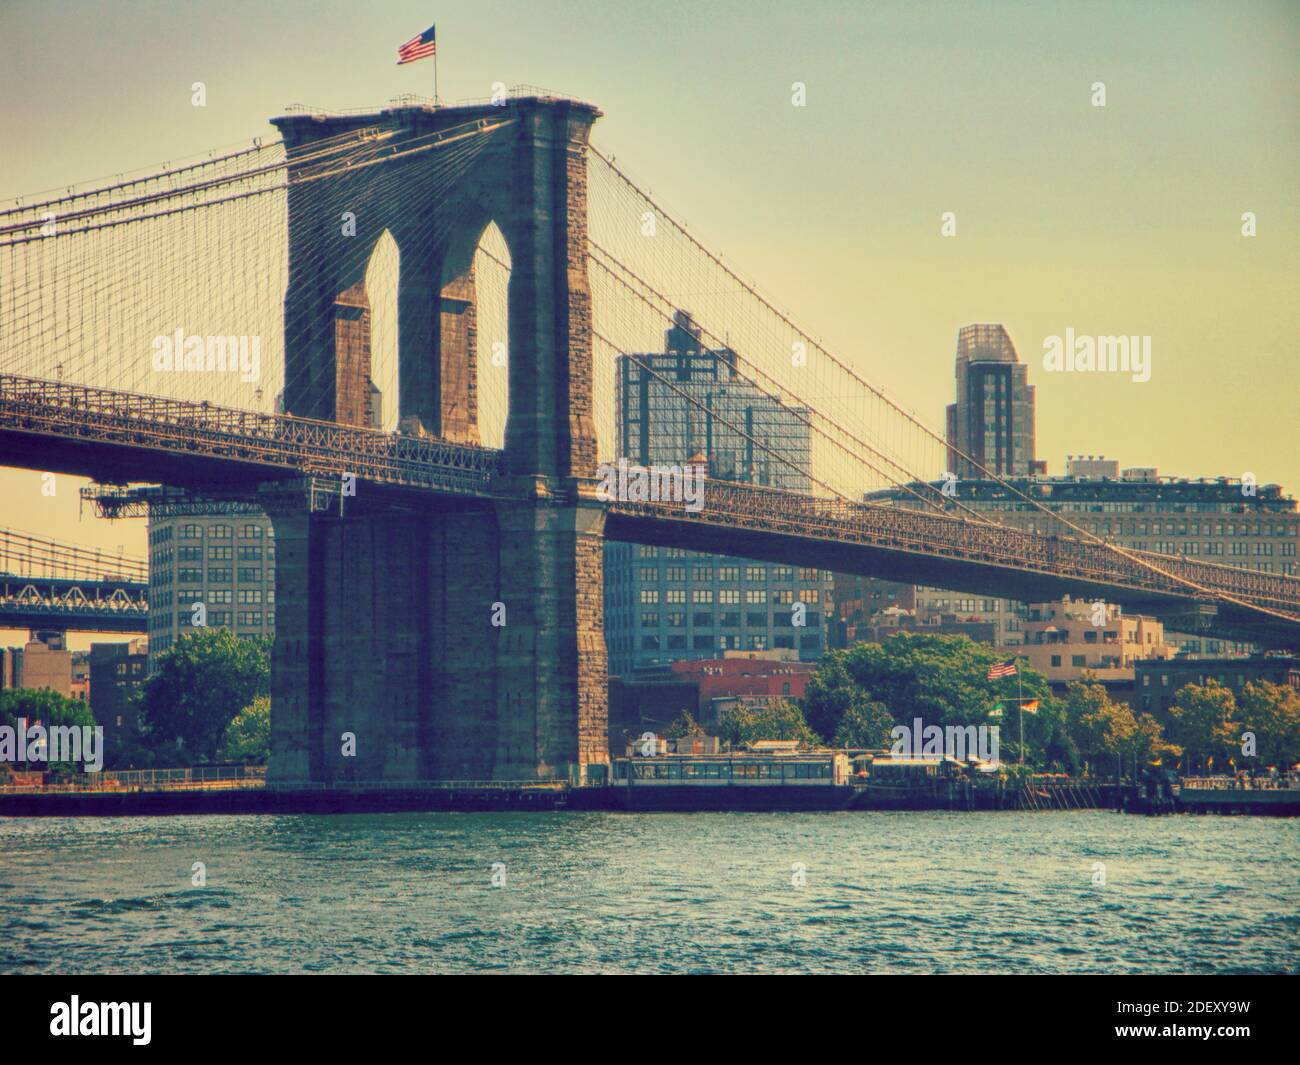 Der neogotische Kalksteinturm mit den abgehängten Kabeln der Brooklyn Bridge, dem berühmten Wahrzeichen von New York am East River. Stockfoto